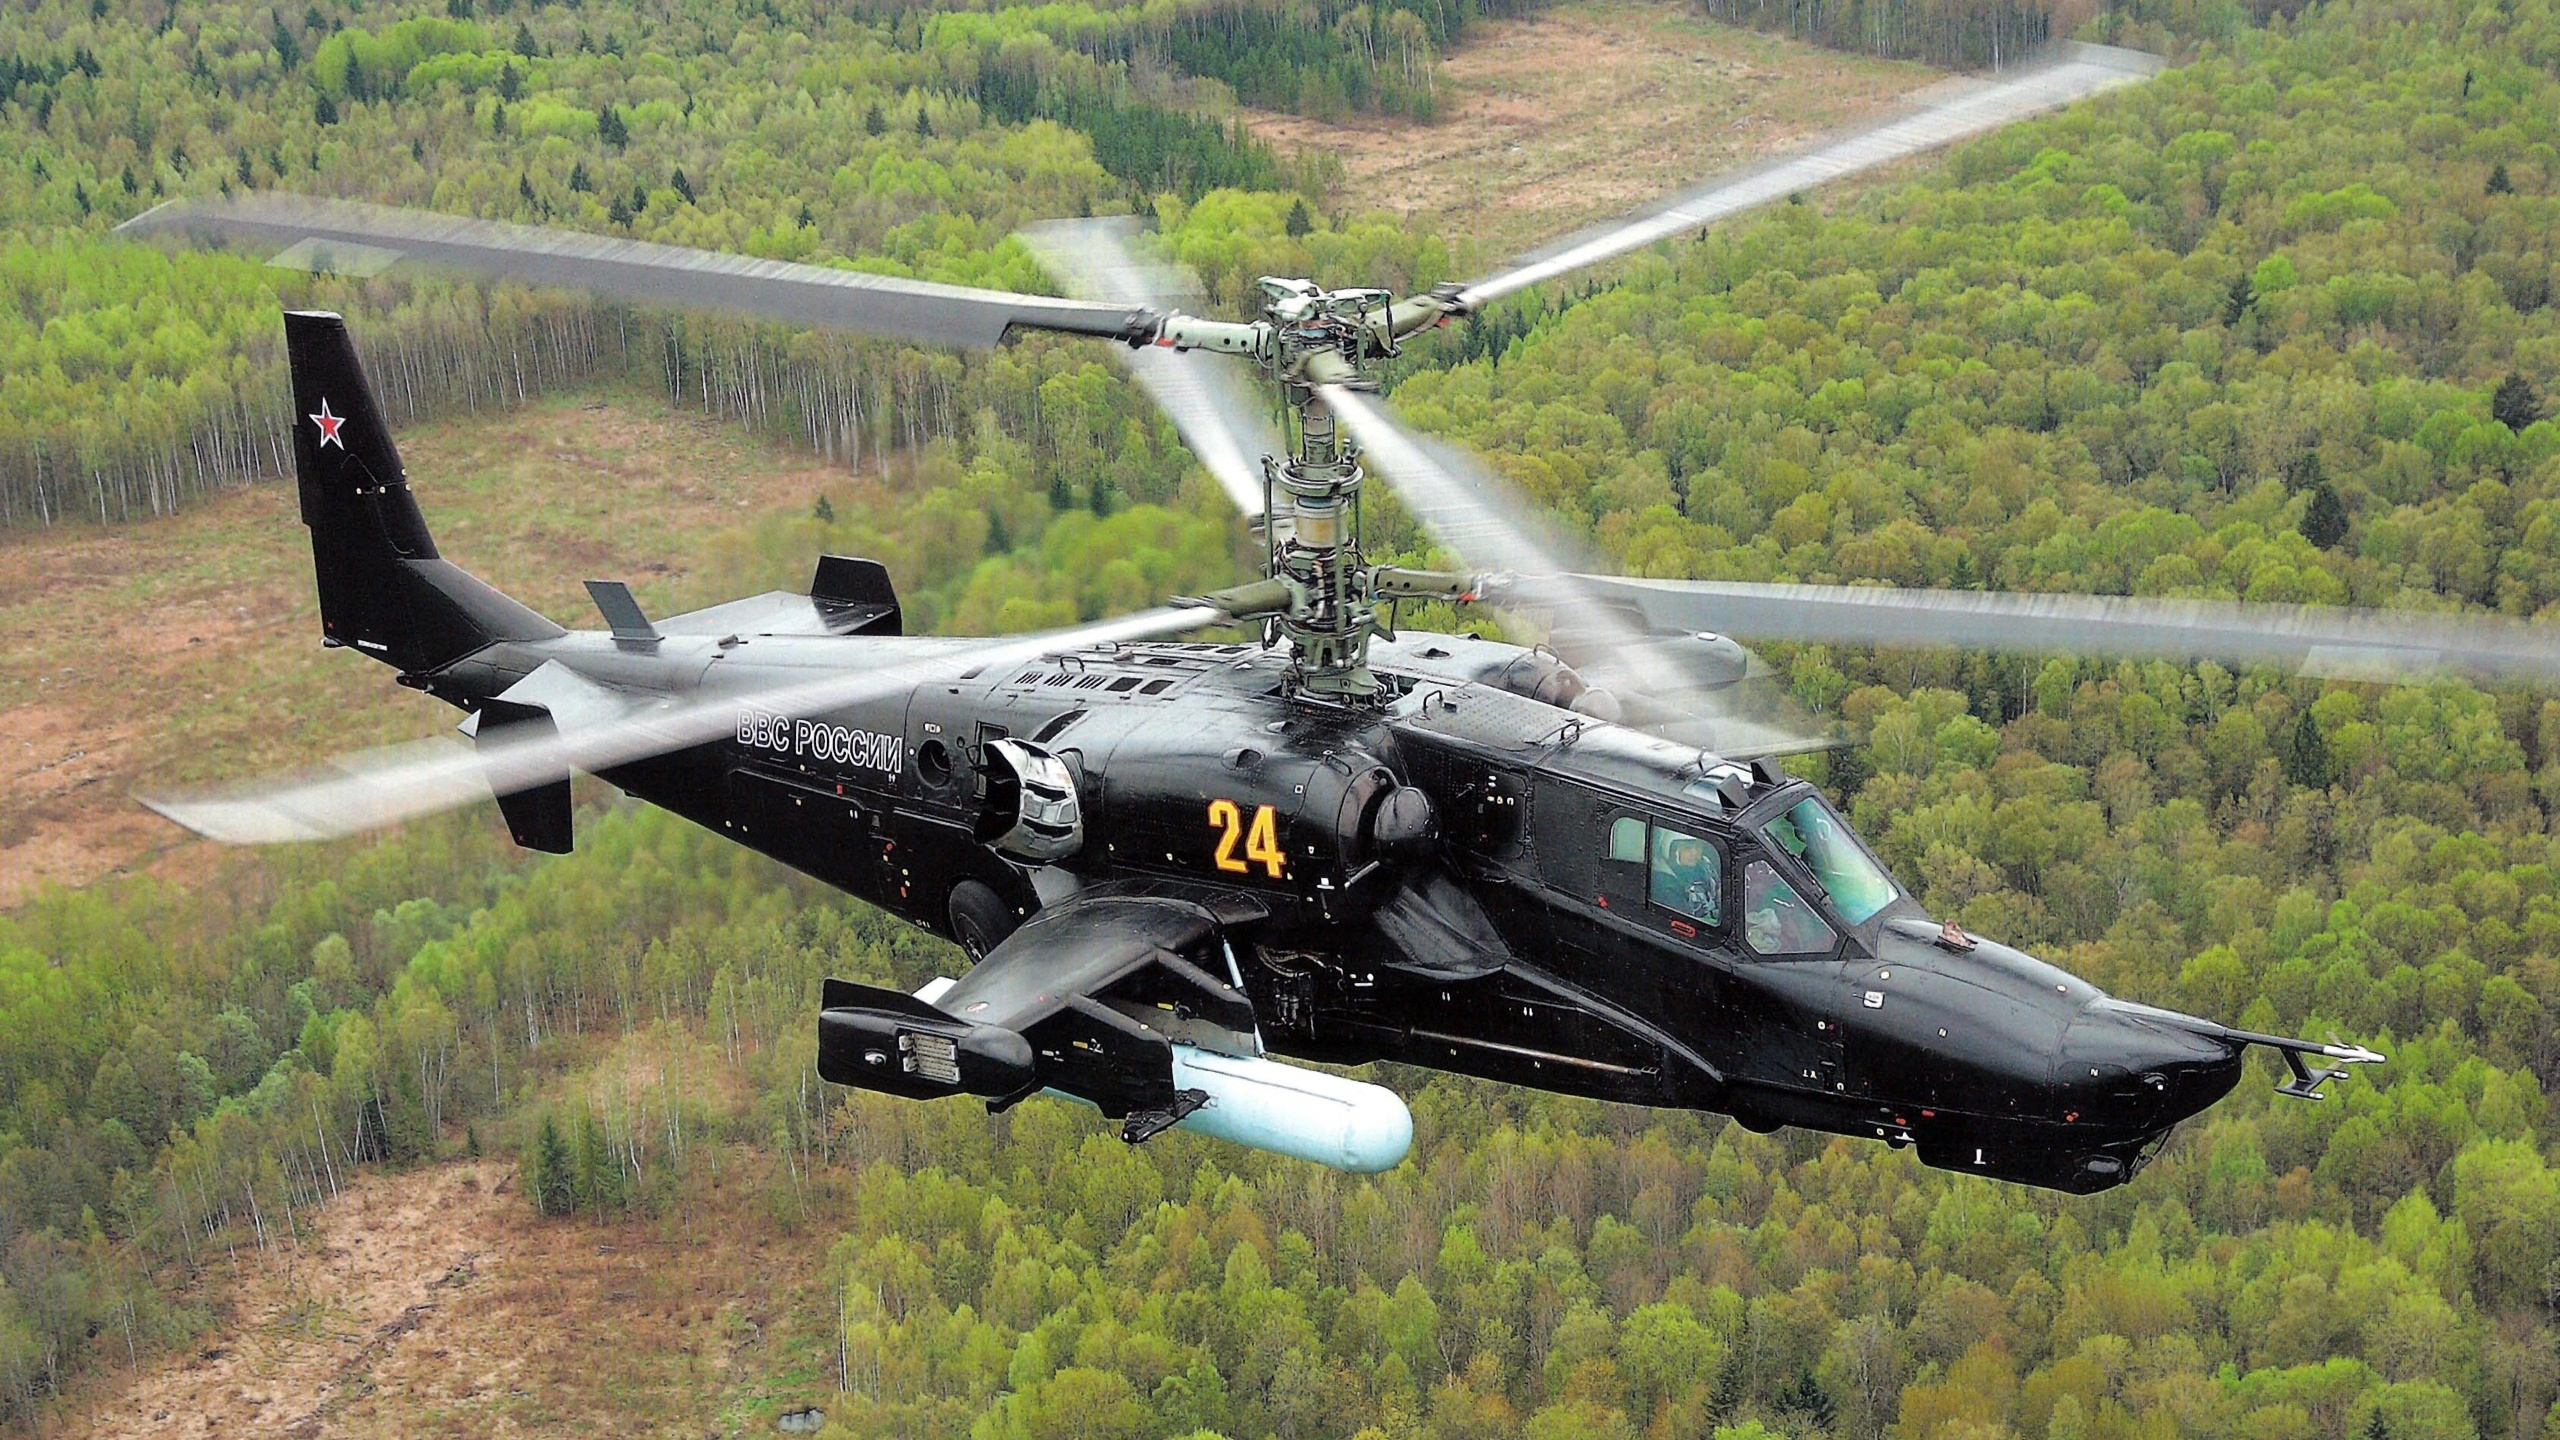 攻击直升机, 卡莫夫, 武装直升机, 直升机, 直升机转子的 壁纸 2560x1440 允许